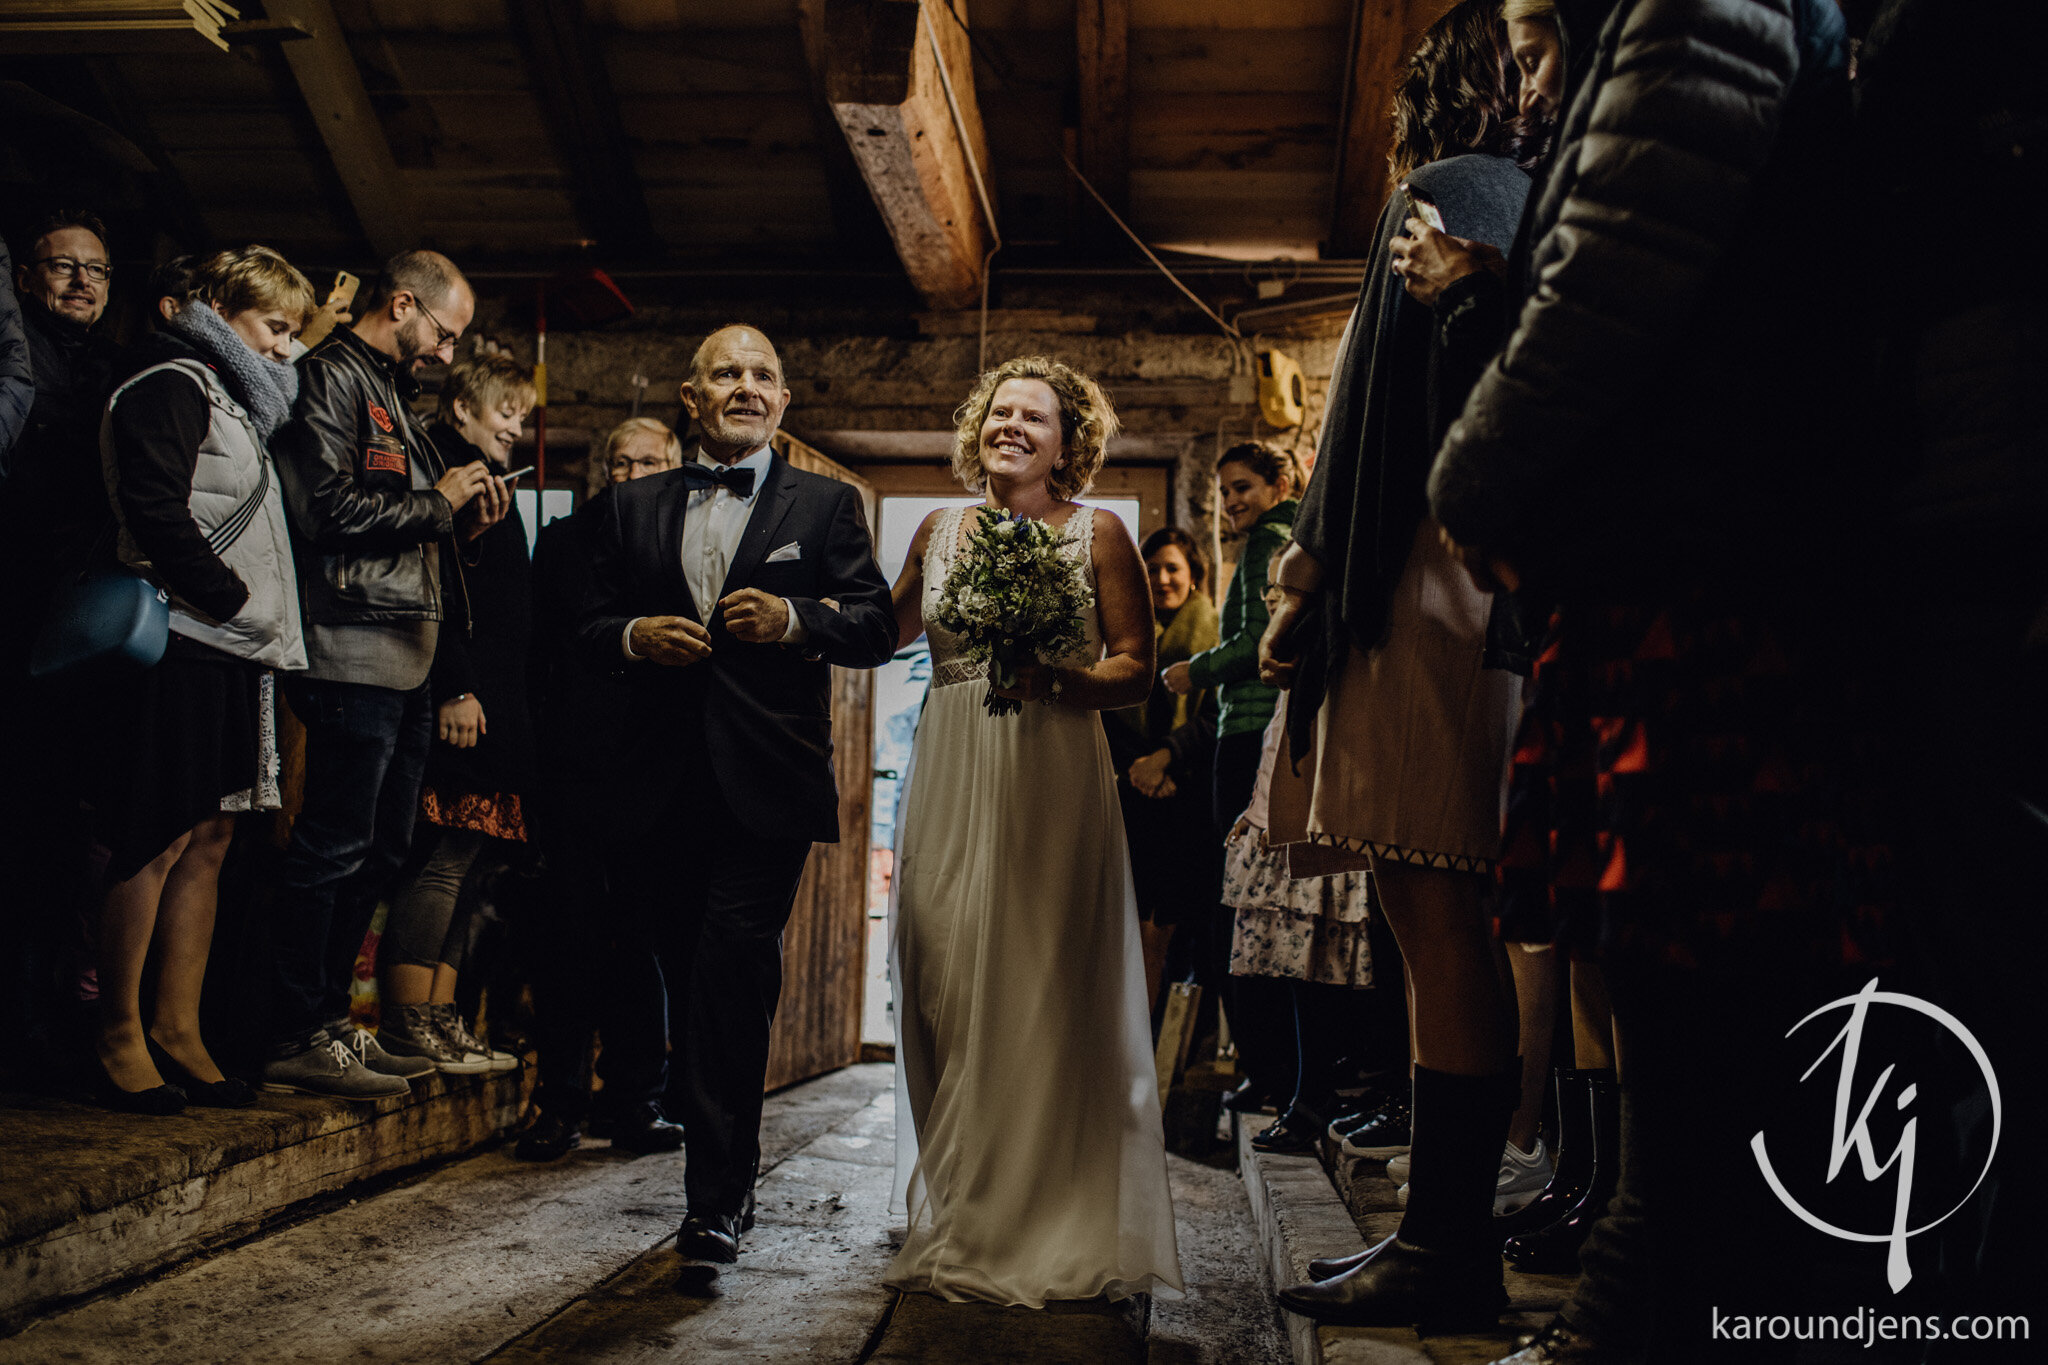 Heiraten-in-den-Bergen-Hochzeit-in-den-Bergen-hochzeitsfotograf-schweiz-karo-und-jens-jens-wenzel-karolin-schell_136_4R4A4405.jpg